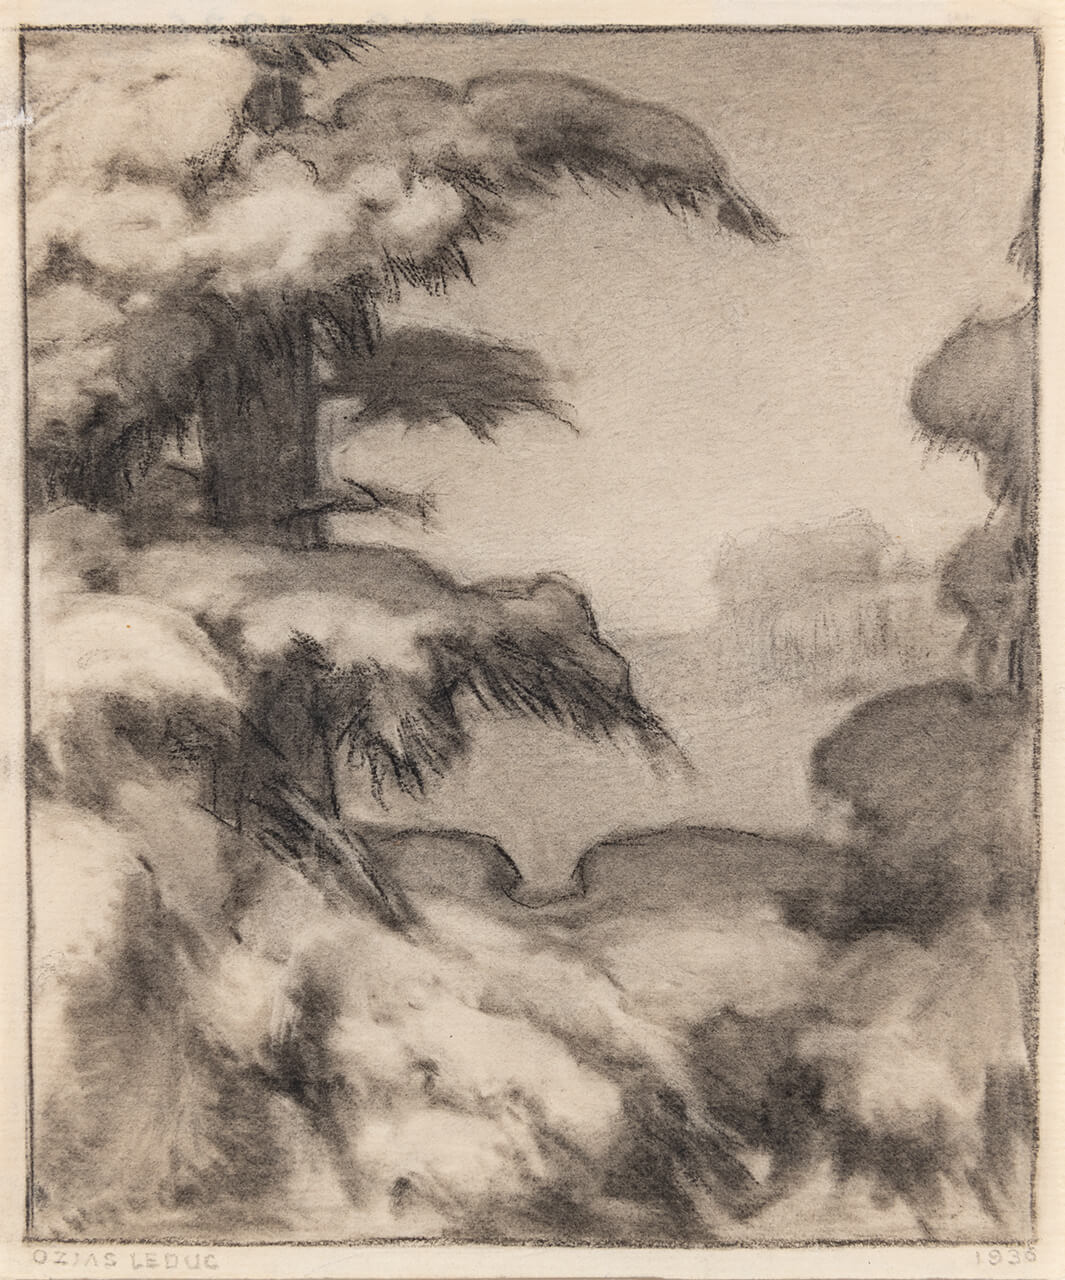 Ozias Leduc, Neige sur les branches, 1936